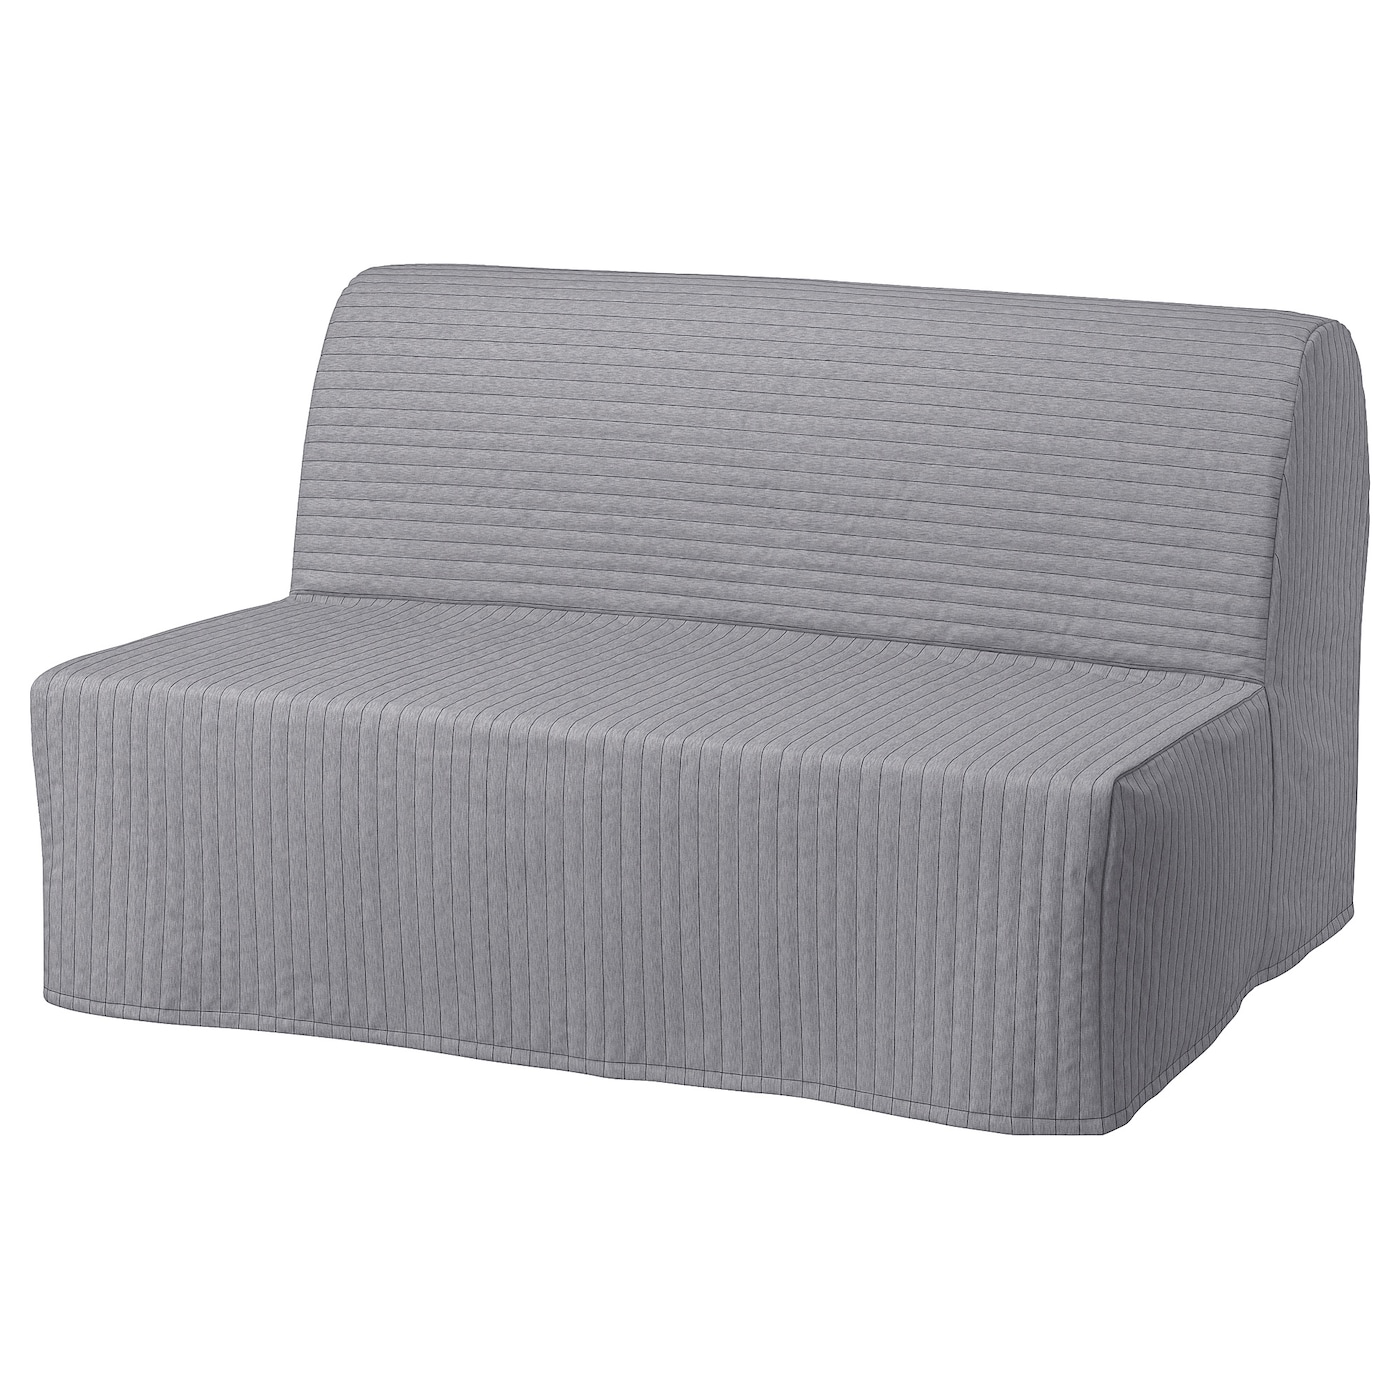 ЛИКСЕЛЕ ХОВЕТ 2 дивана-кровати с откидной спинкой, Книса светло-серый LYCKSELE HÅVET IKEA матрас для дивана первый мебельный винсен 3